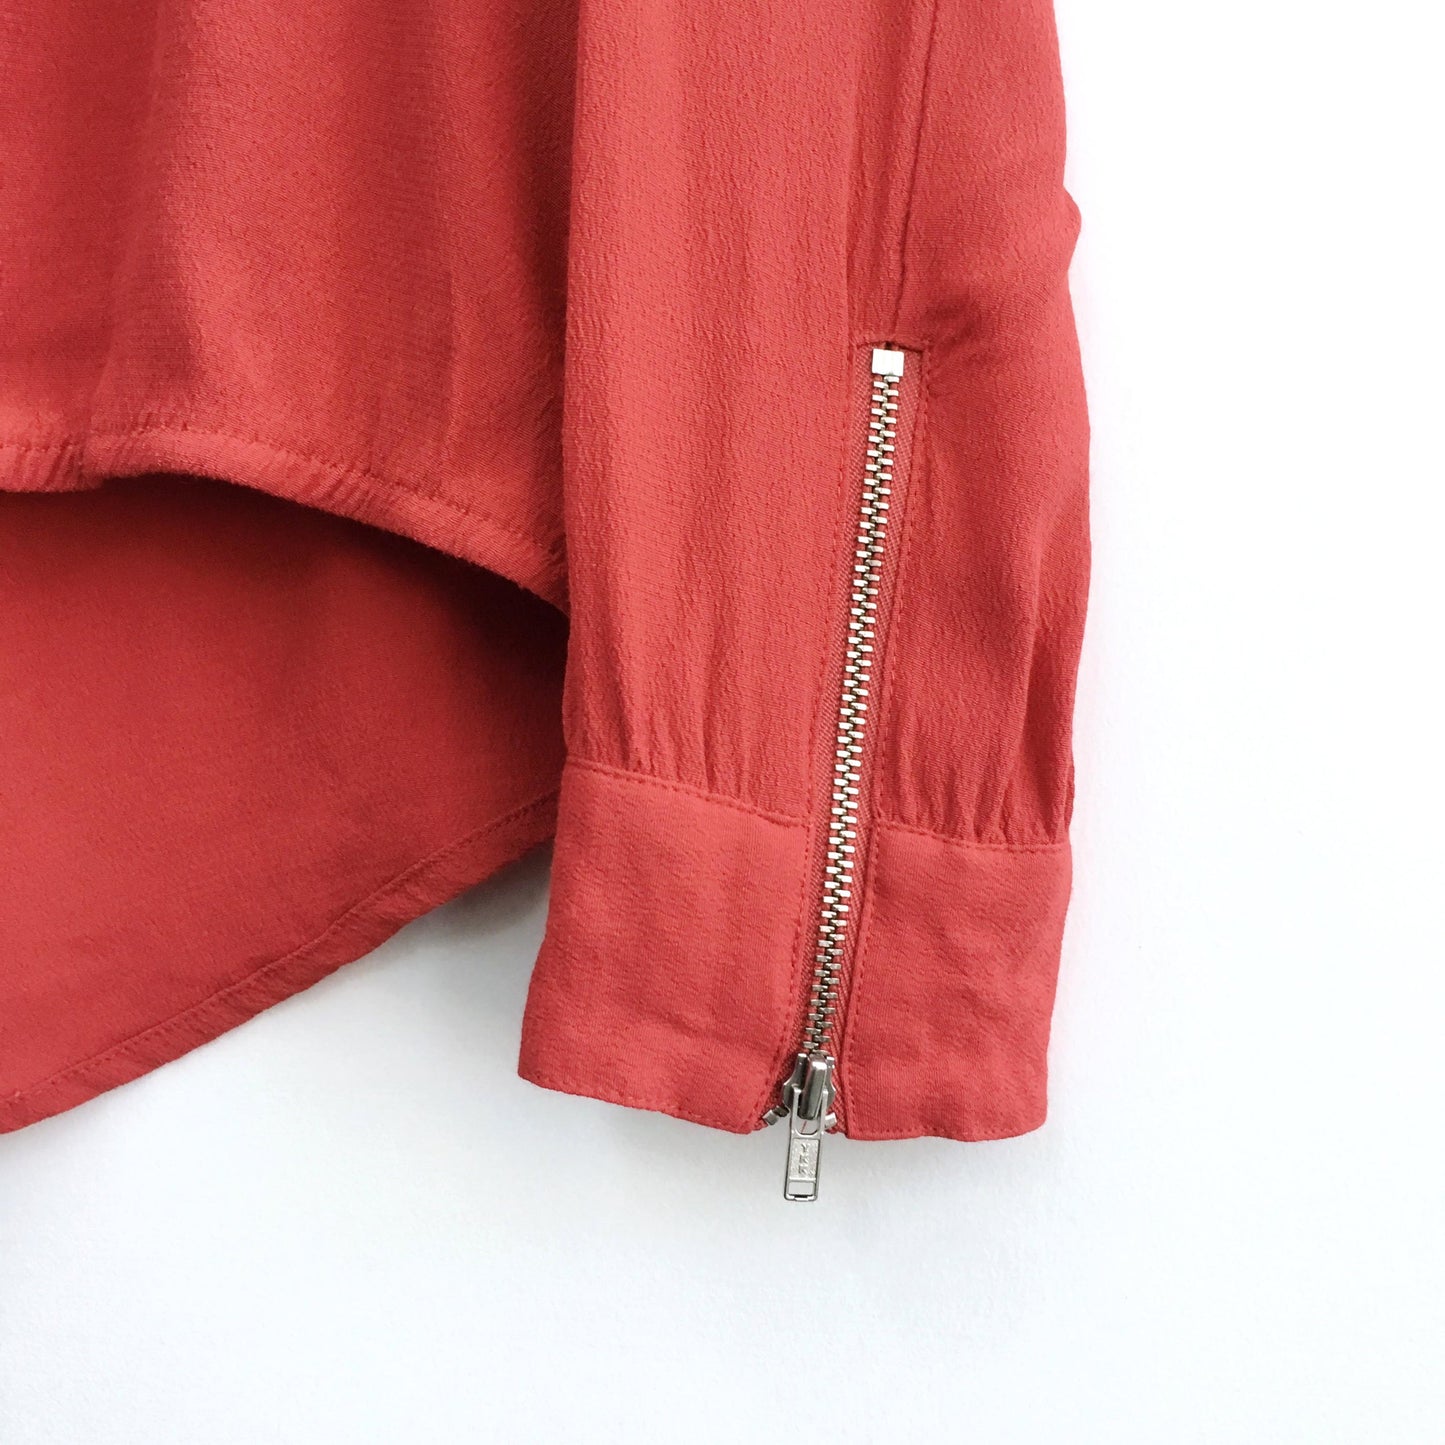 Trouvé surplice zip cuff blouse - size Small